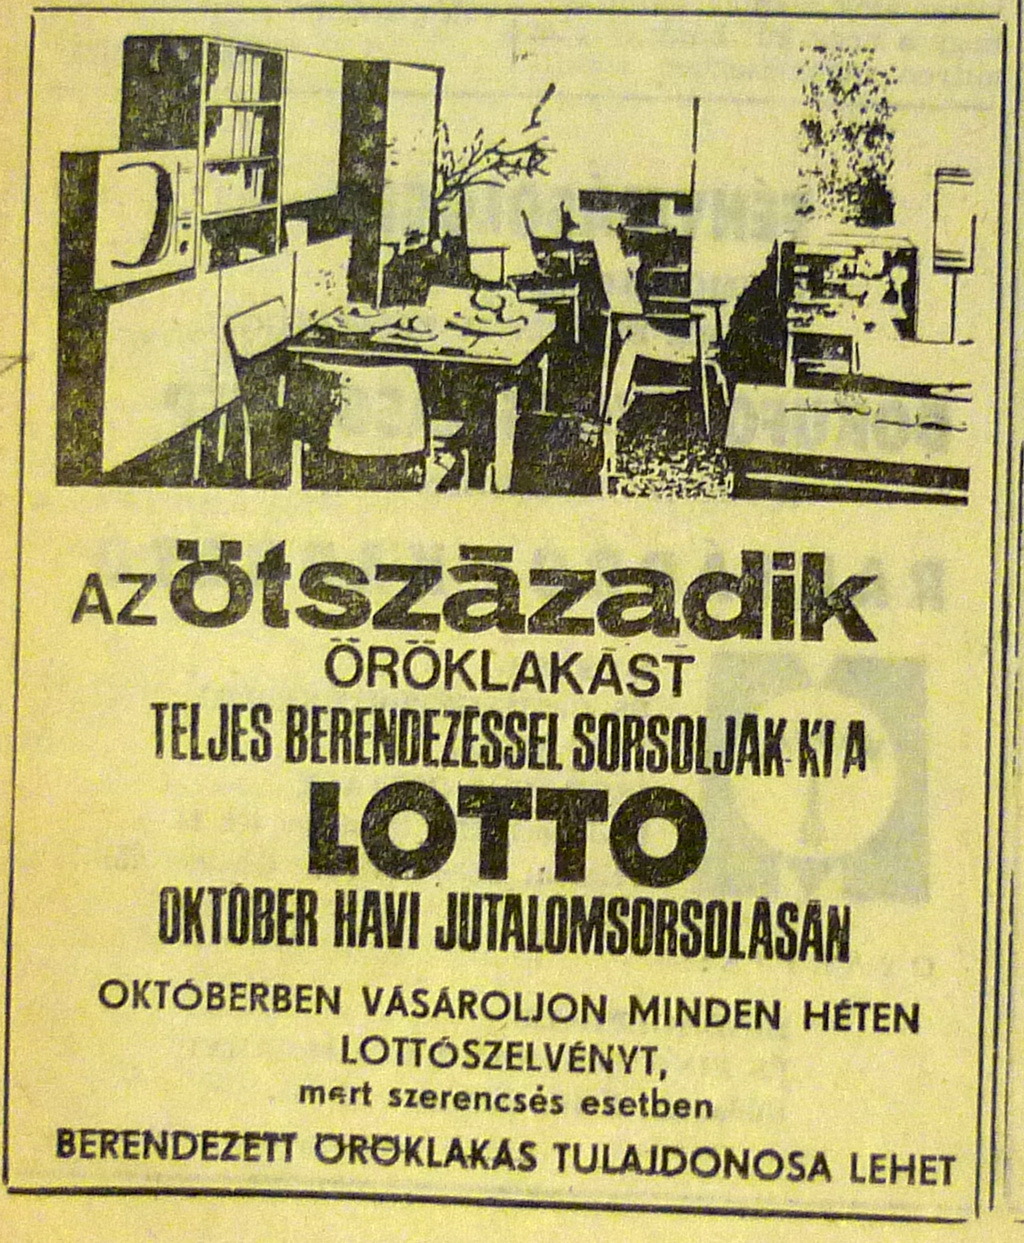 lottohazak-197010-hirdetes-magyarnemzet.jpg